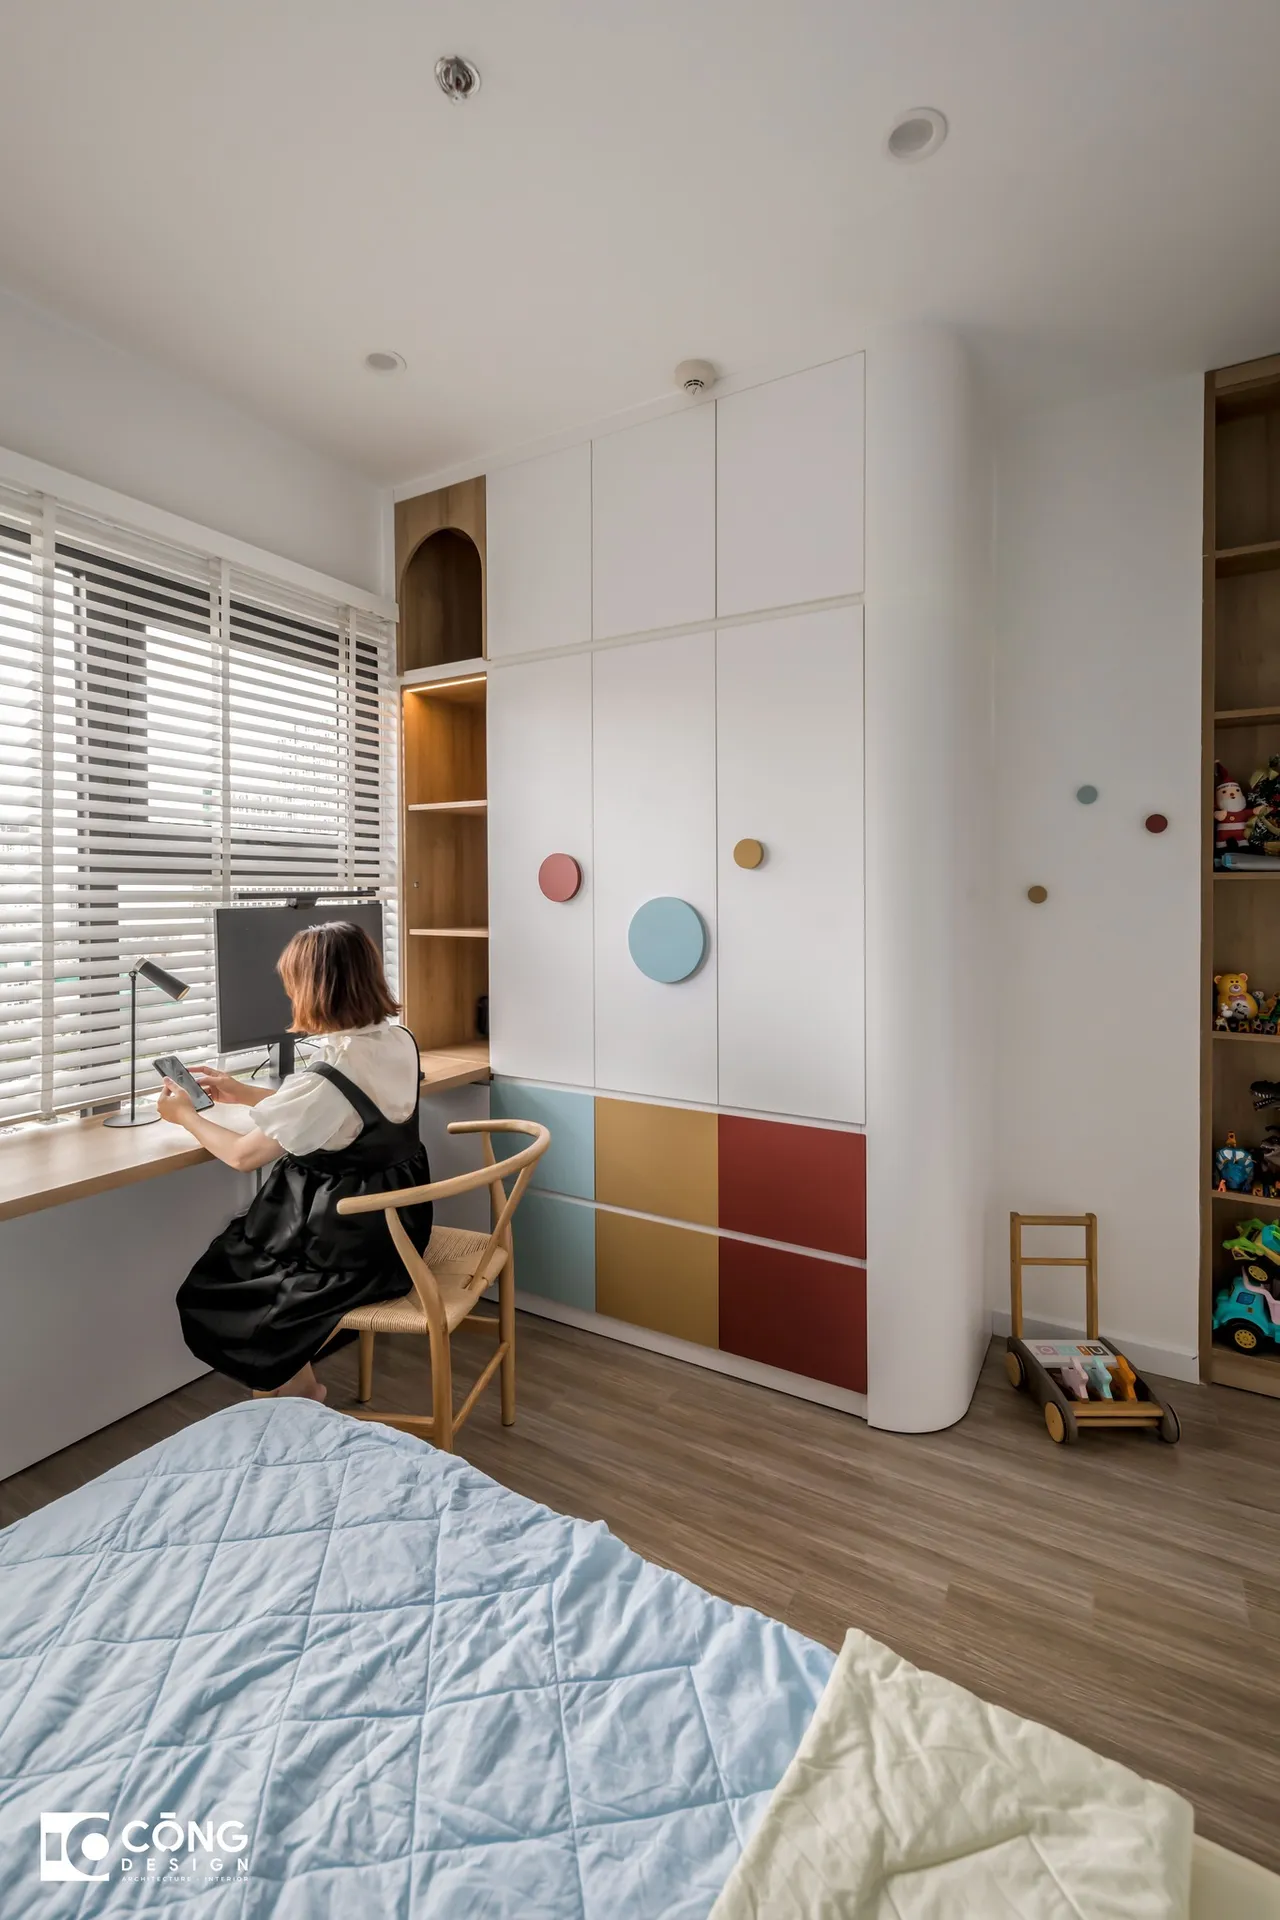 Hoàn thiện nội thất phòng ngủ cho bé Căn hộ S503 Vinhomes Grand Park phong cách Tối giản Minimalist, phong cách Color Block